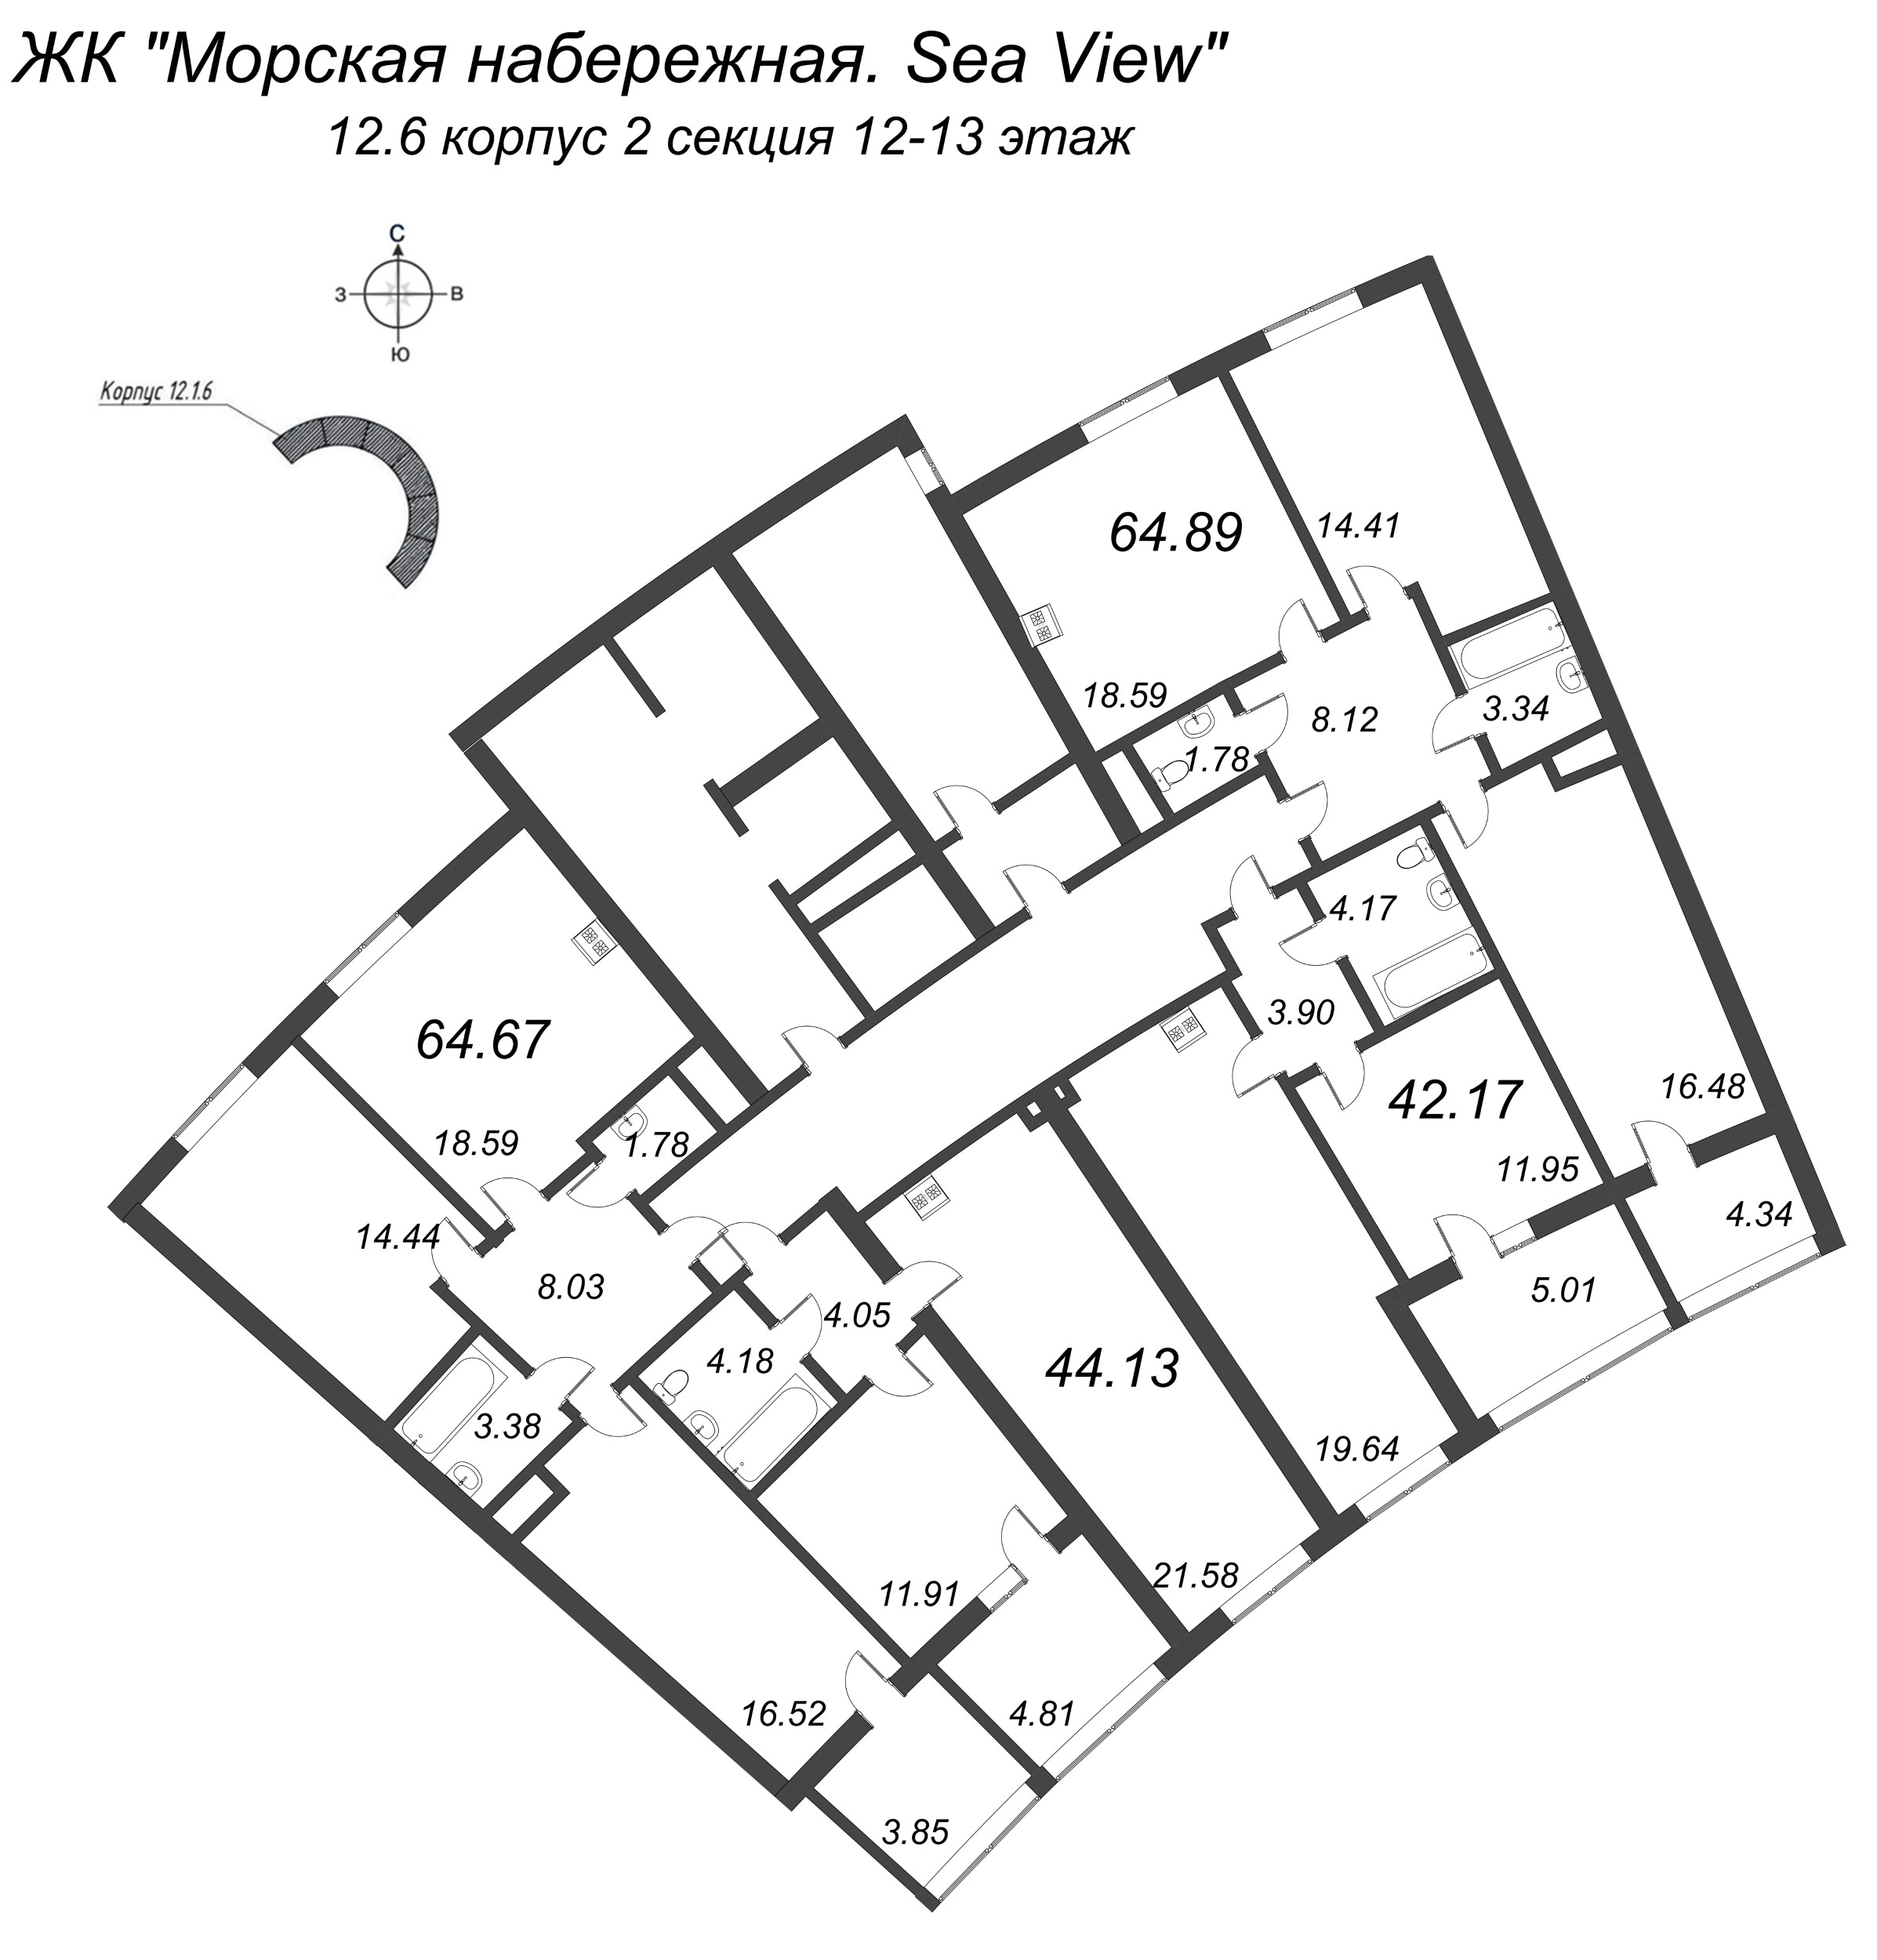 3-комнатная (Евро) квартира, 64.67 м² в ЖК "Морская набережная. SeaView" - планировка этажа